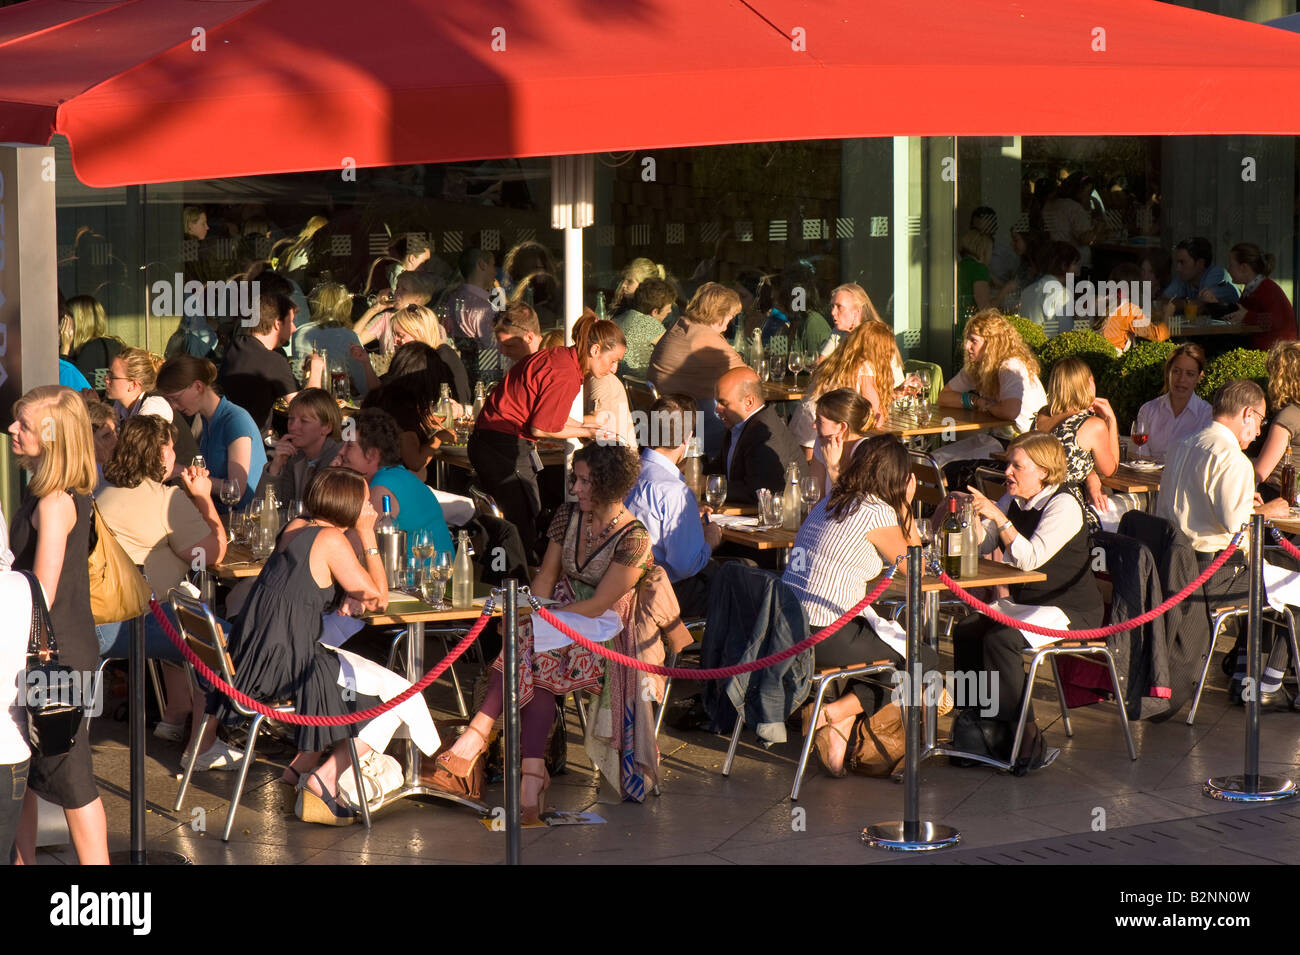 Menschen zu genießen, Essen und trinken vom Royal Festival Hall Southbank SE1 London Vereinigtes Königreich Stockfoto